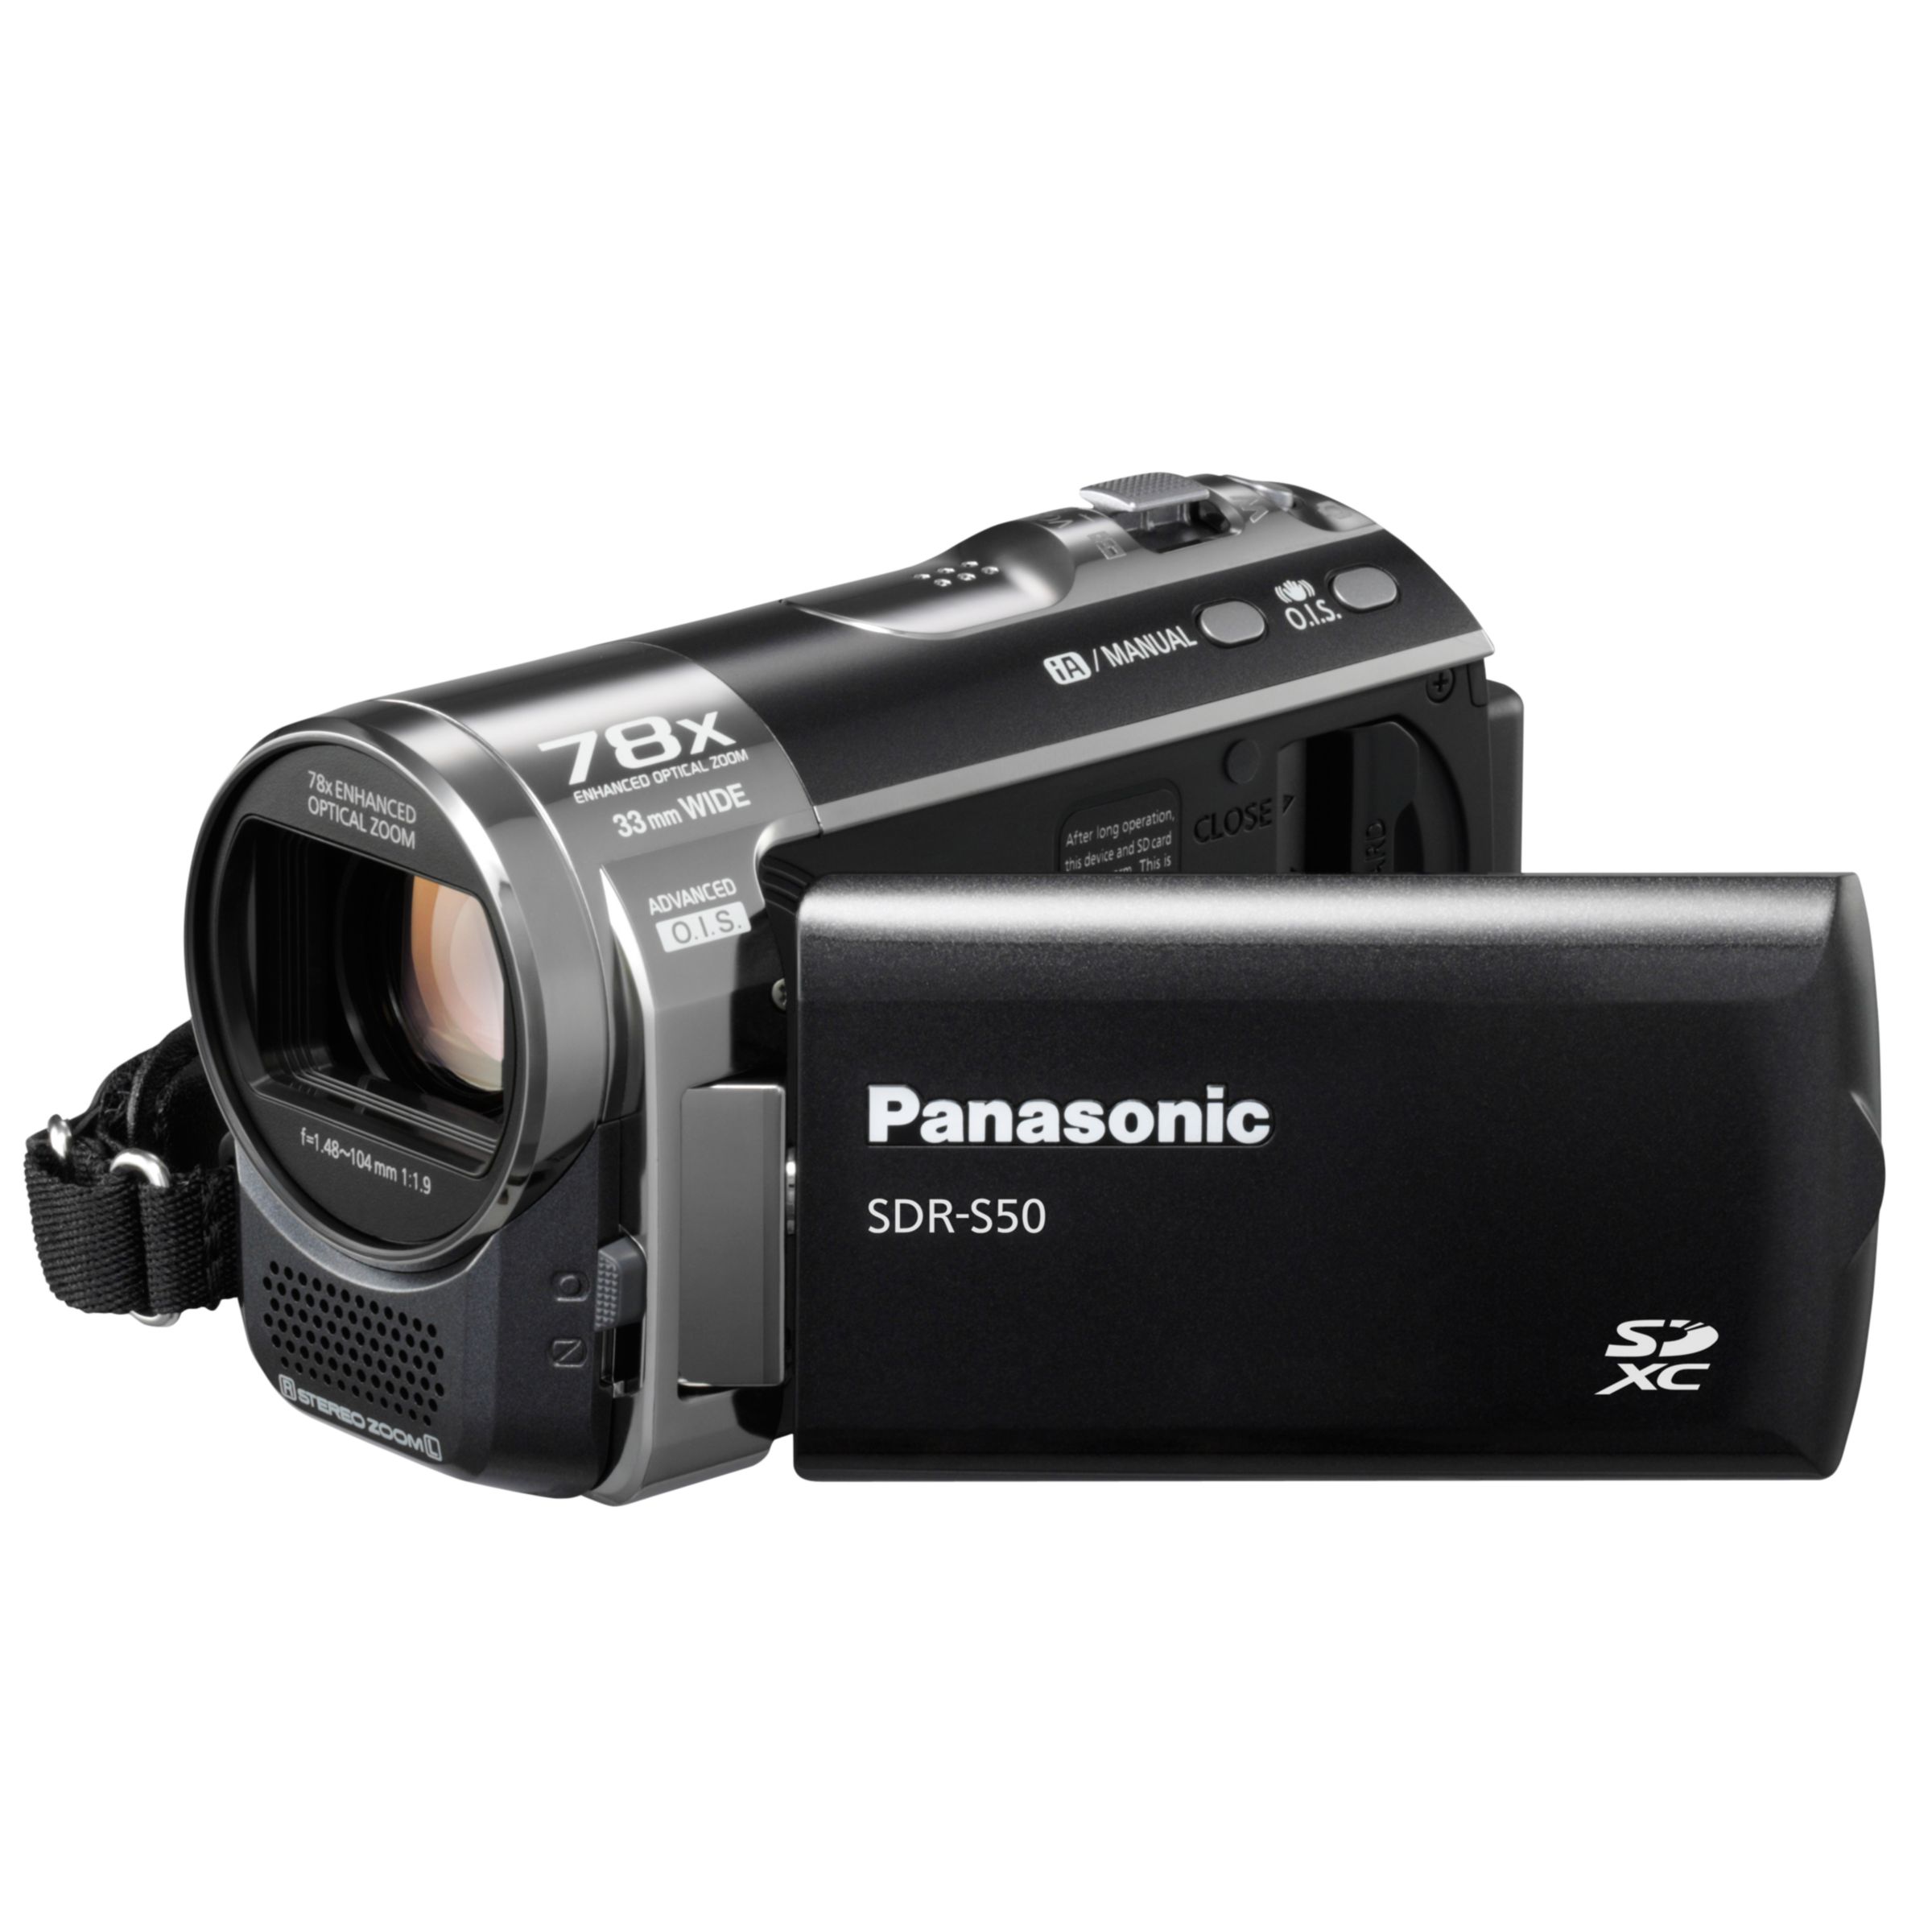 Panasonic SDR-S50EB-K SD Camcorder, Black at John Lewis